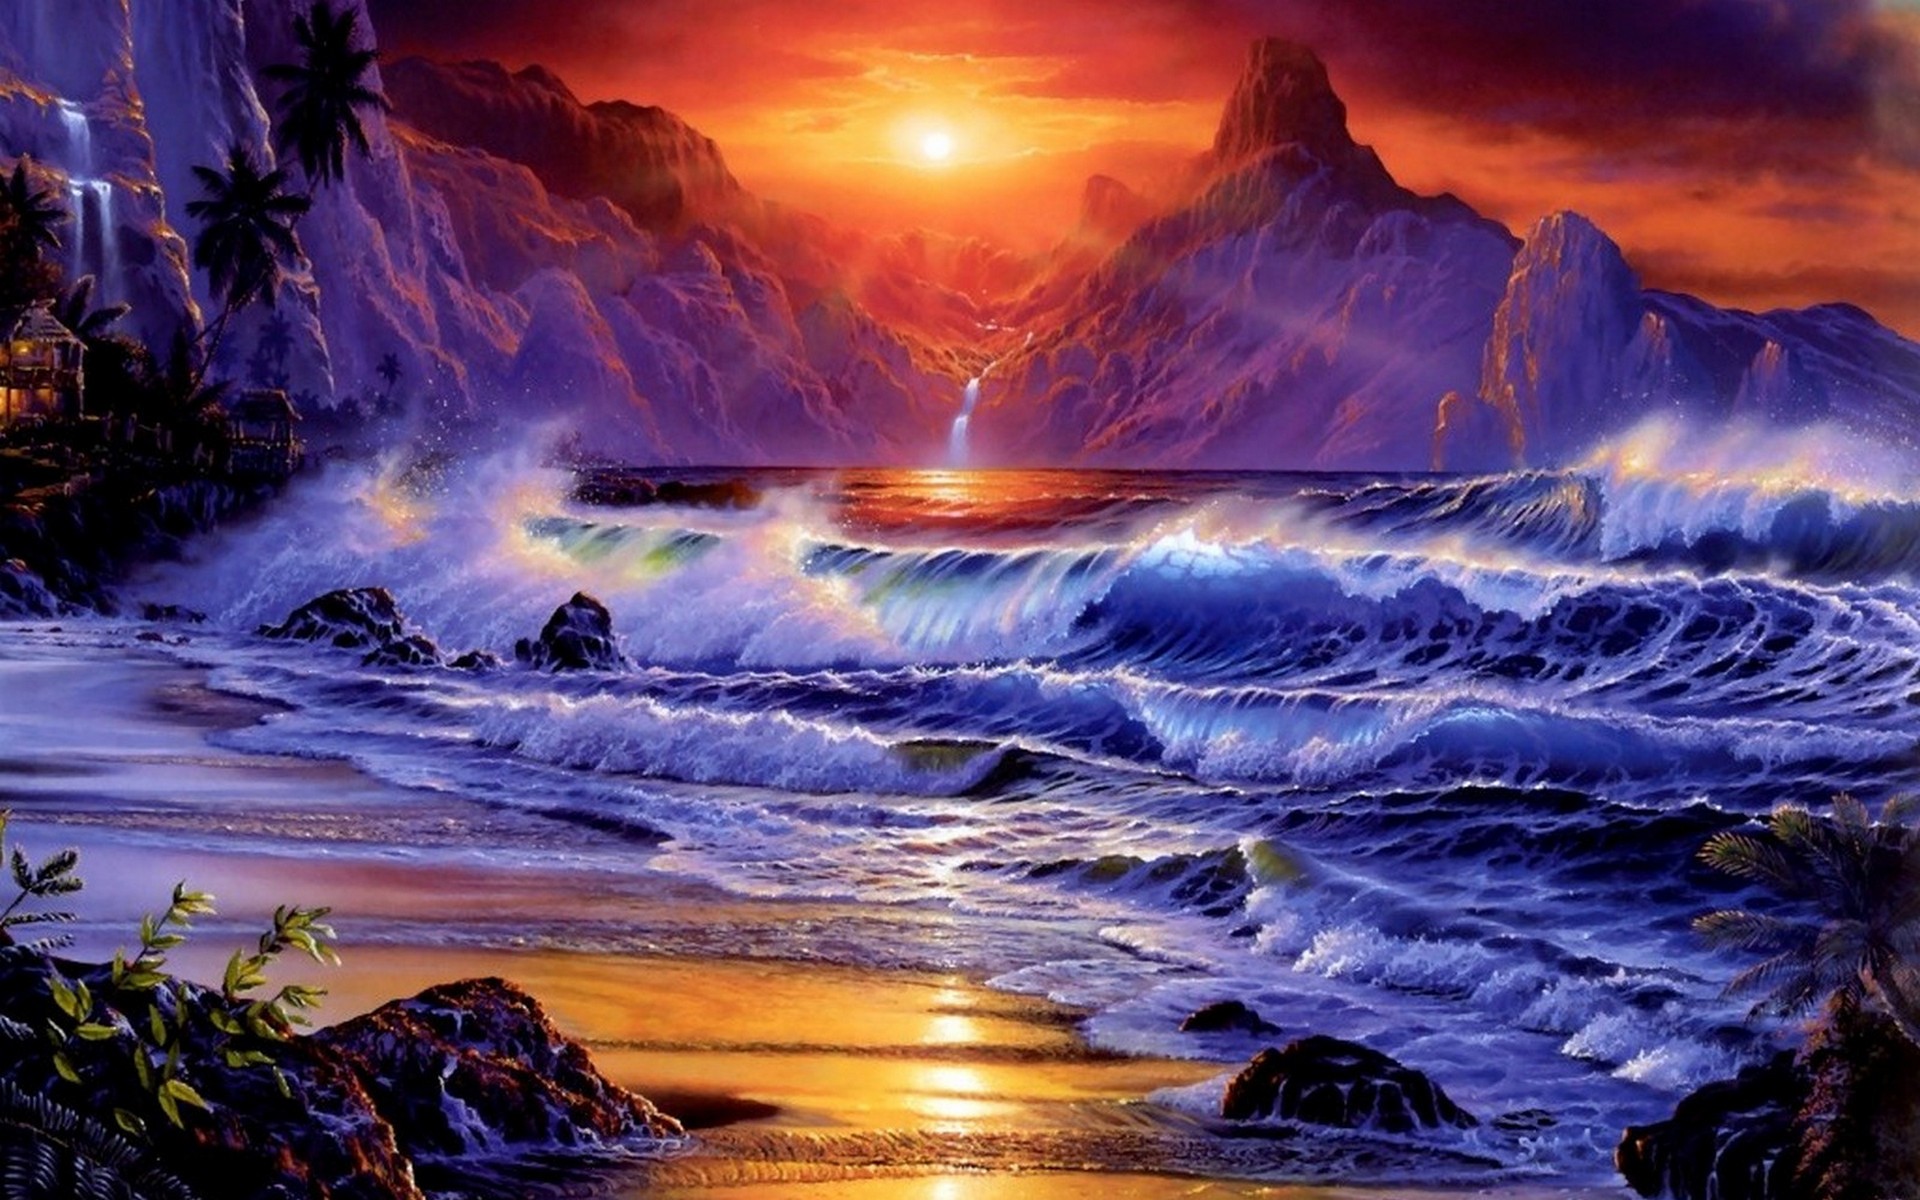 Ocean Sunset Beach Waves - HD Wallpaper 